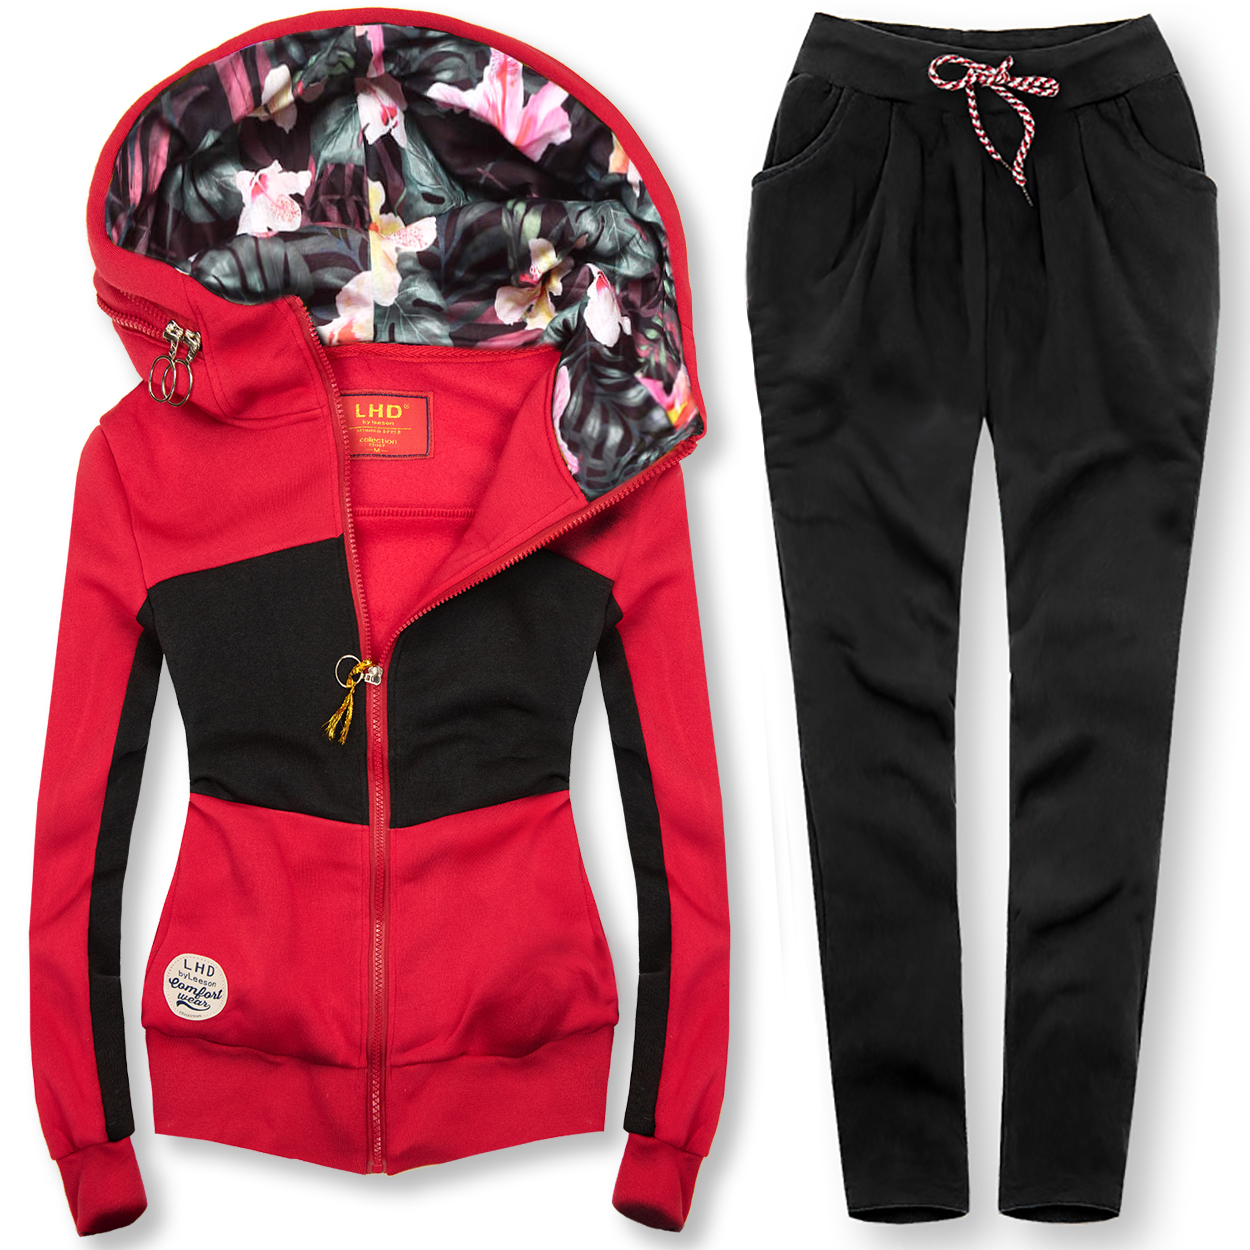 Oblečenie a doplnky - Súprava so vzorovanou kapucňou červená/čierna